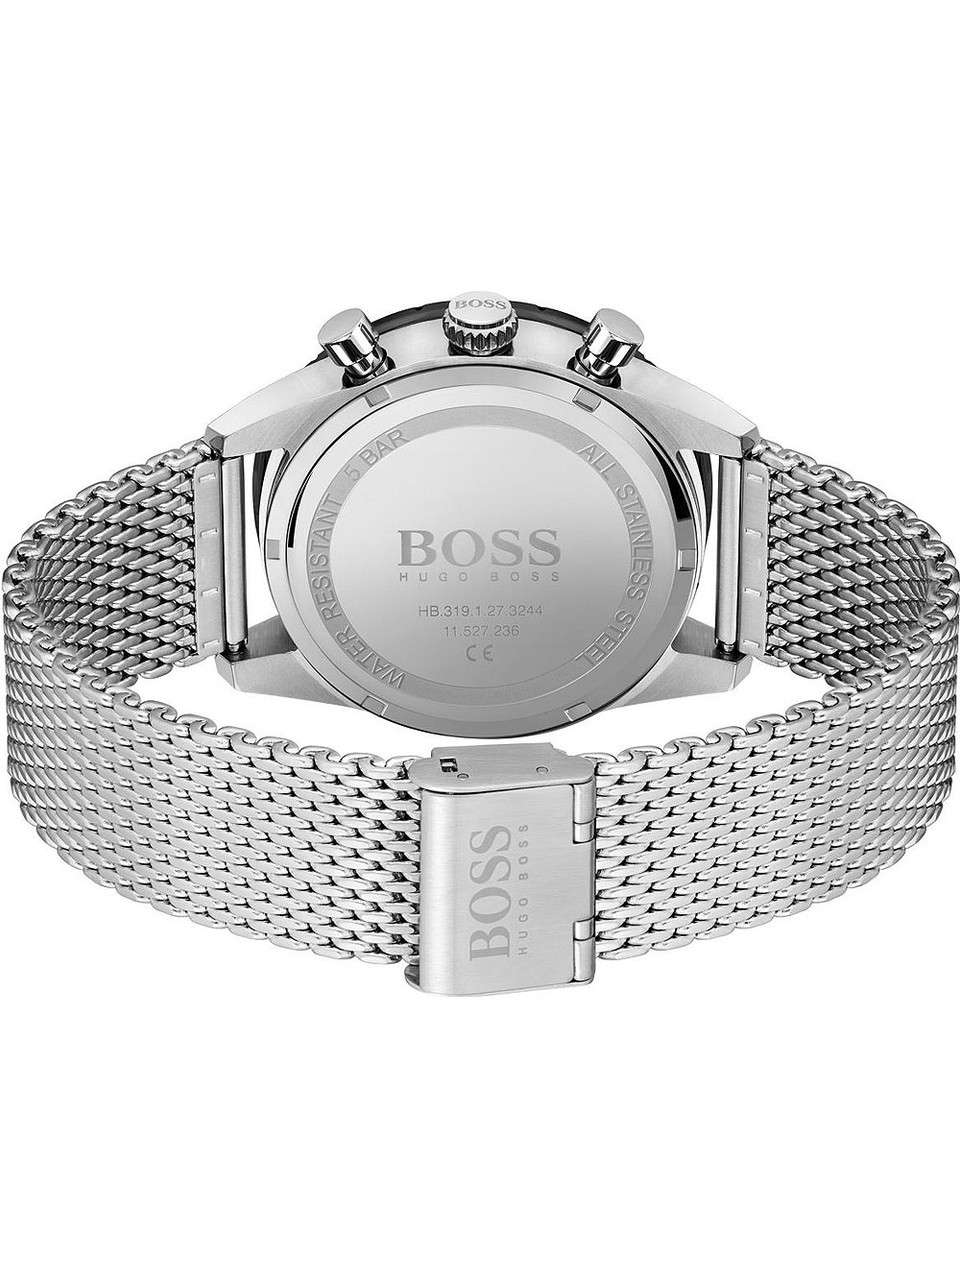 Hugo Boss 1513886 Pilot Edition - Genuine 5ATM Watches owlica 44mm chrono 